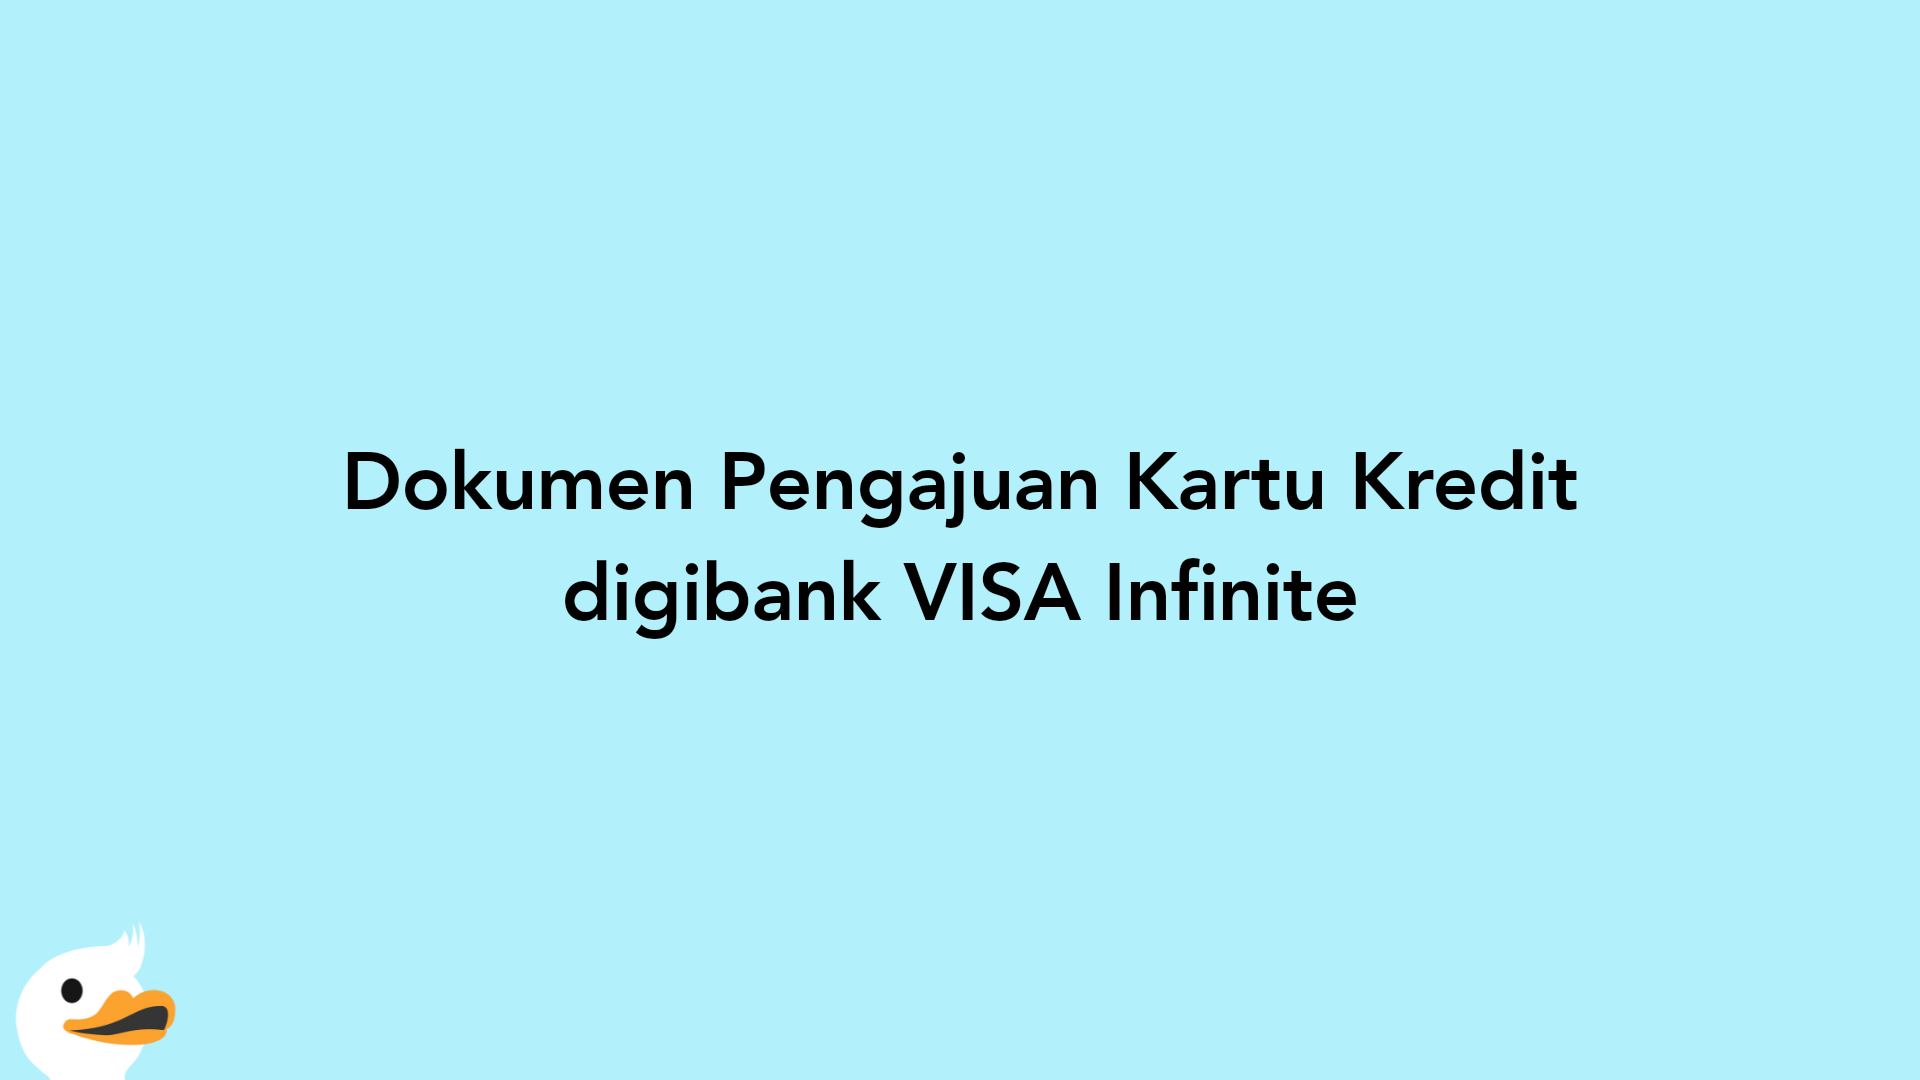 Dokumen Pengajuan Kartu Kredit digibank VISA Infinite